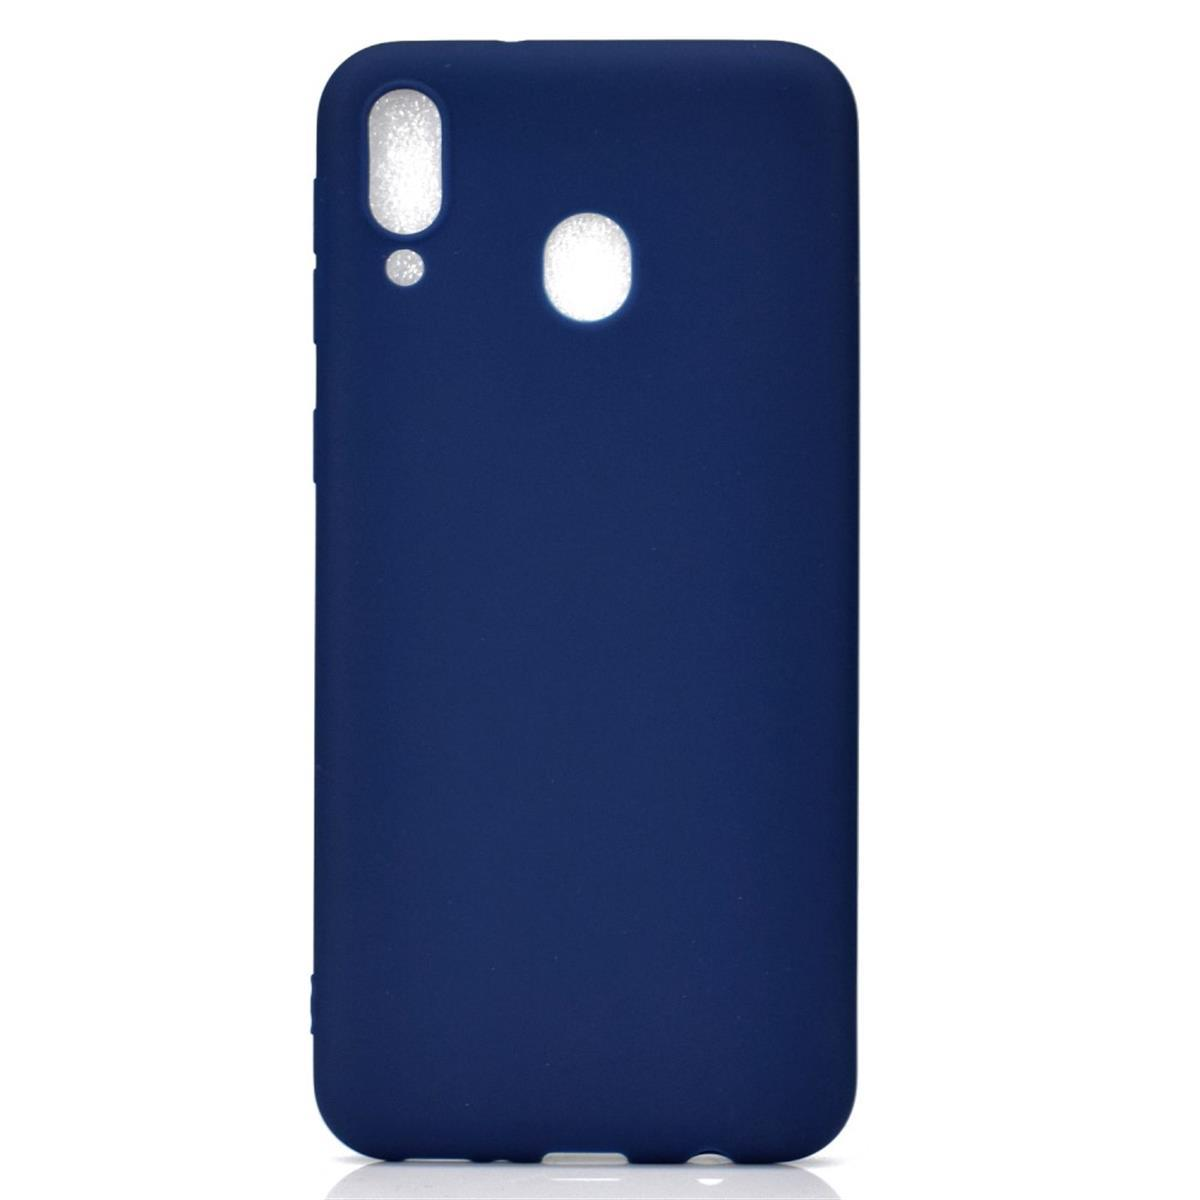 Handycase Galaxy COVERKINGZ Backcover, Silikon, aus Samsung, A40, Blau